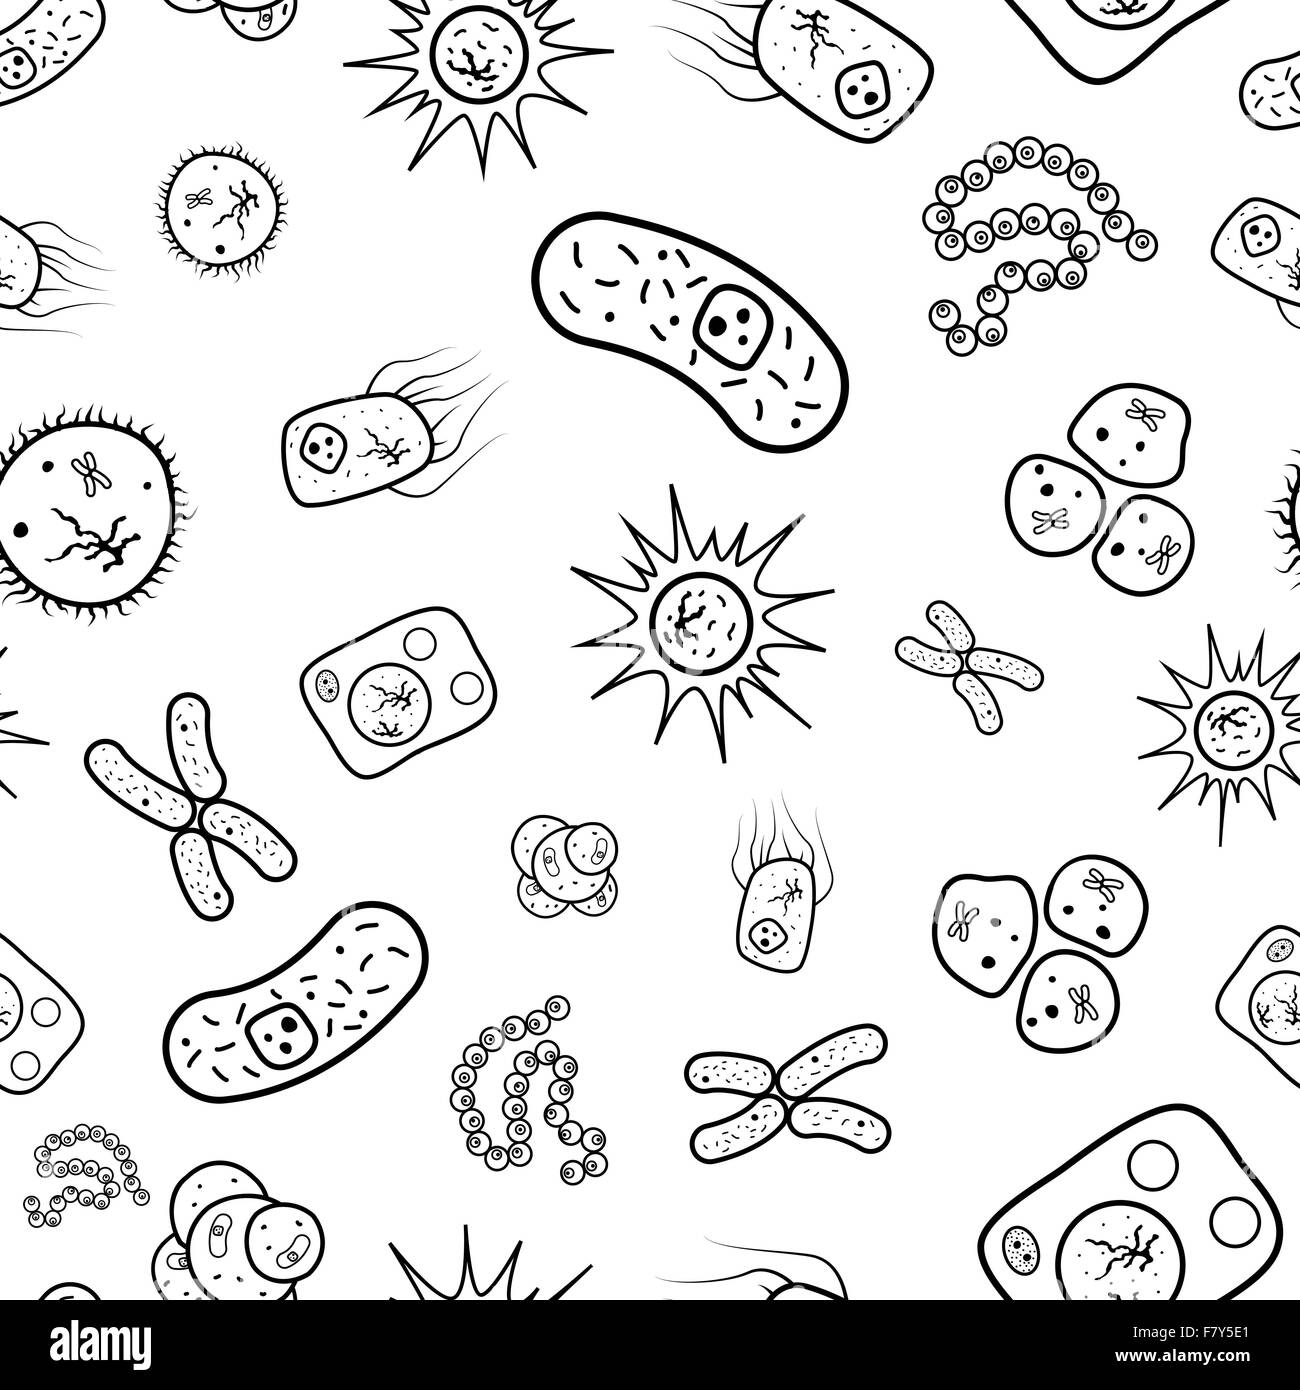 Раскраски микробы и вирусы